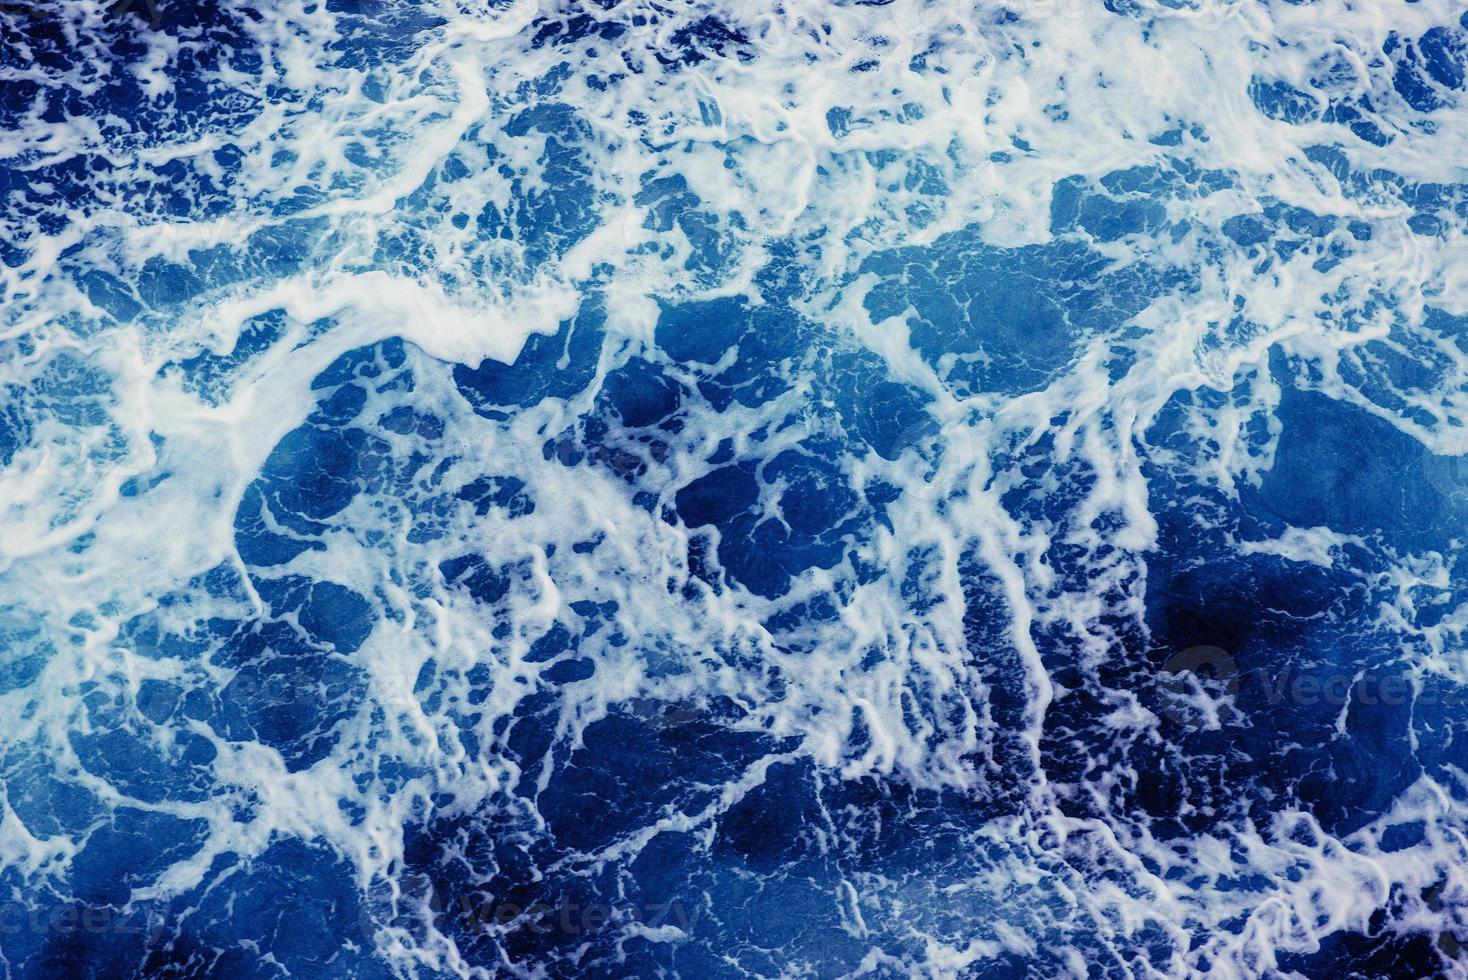 fond bleu vagues de la mer. photo